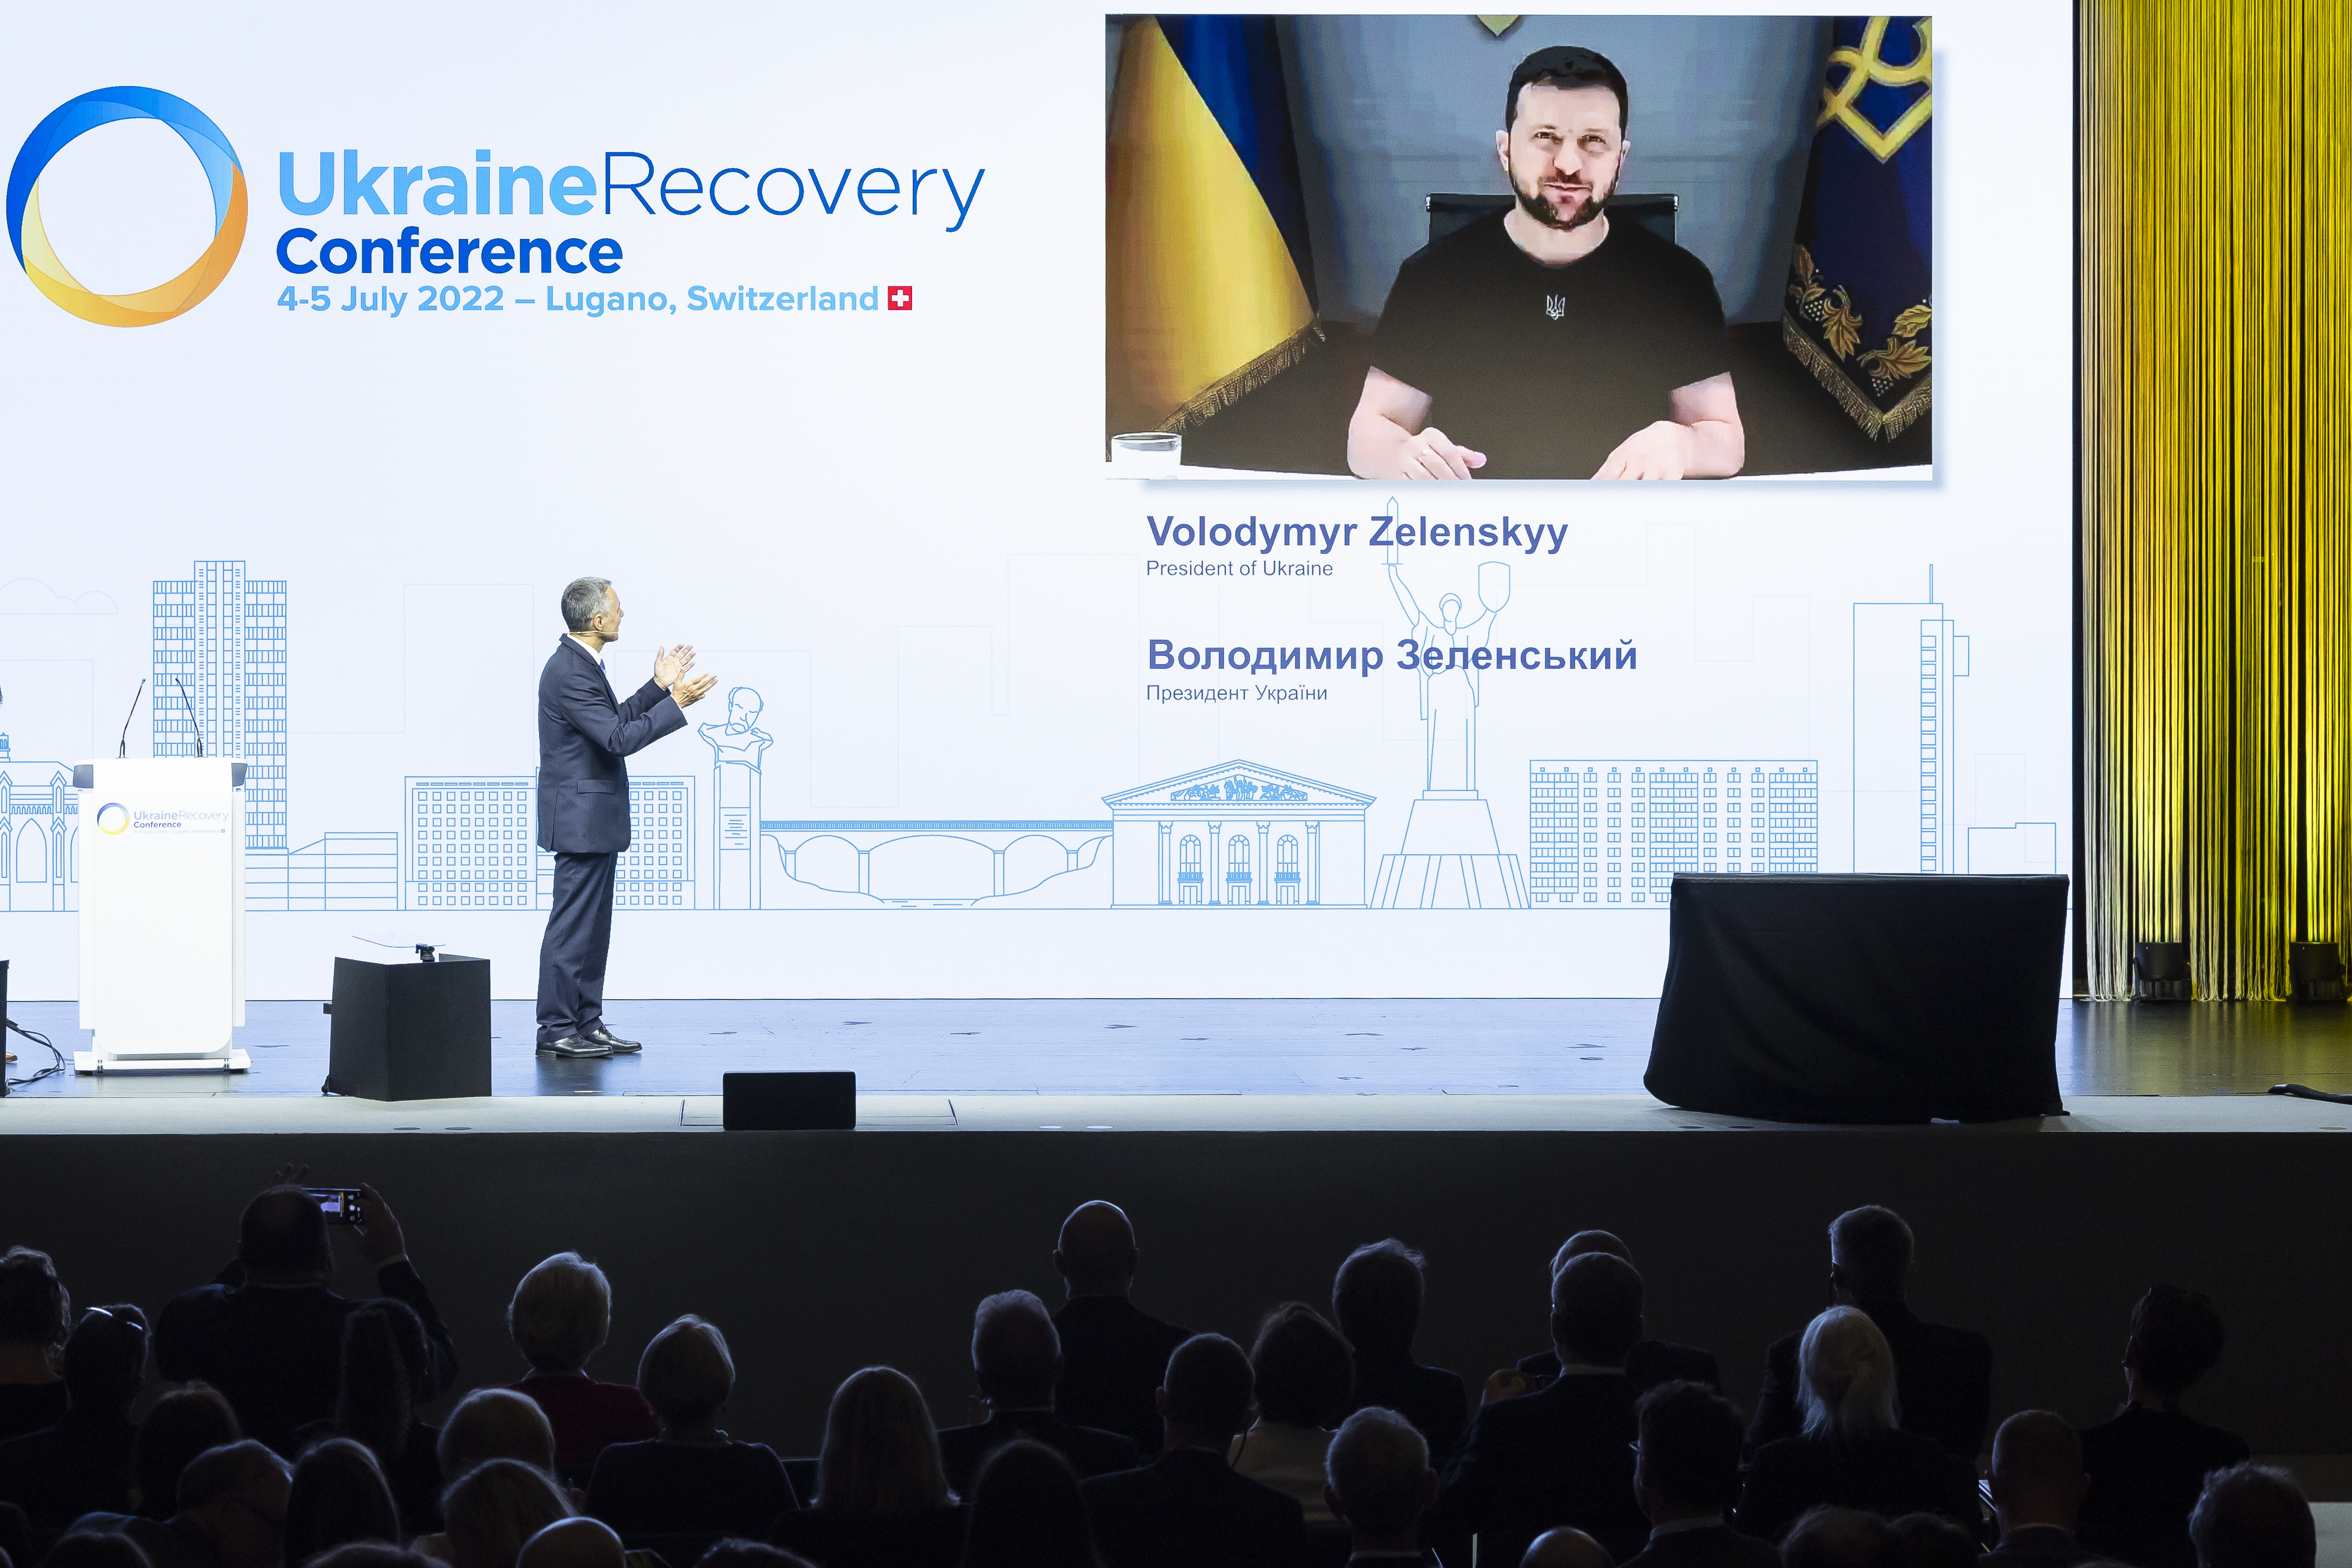 El presidente suizo Ignazio Cassis, ministro de Relaciones Exteriores, a la izquierda, presenta al presidente ucraniano Volodimir Zelensky por videoconferencia durante la Conferencia de Recuperación de Ucrania (Michael Buholzer/Keystone vía AP)
